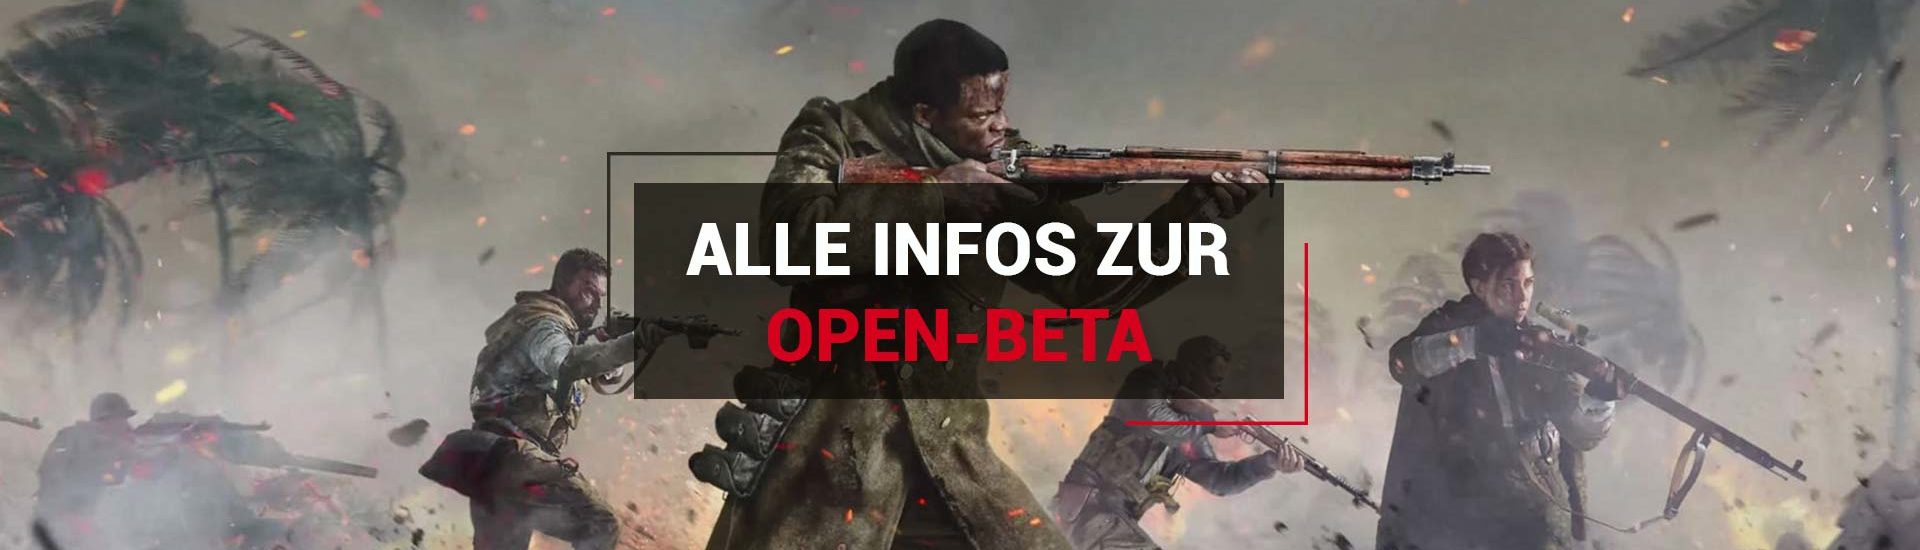 Call of Duty: Vanguard Open Beta: Alle Infos zum Start, Download und Inhalt